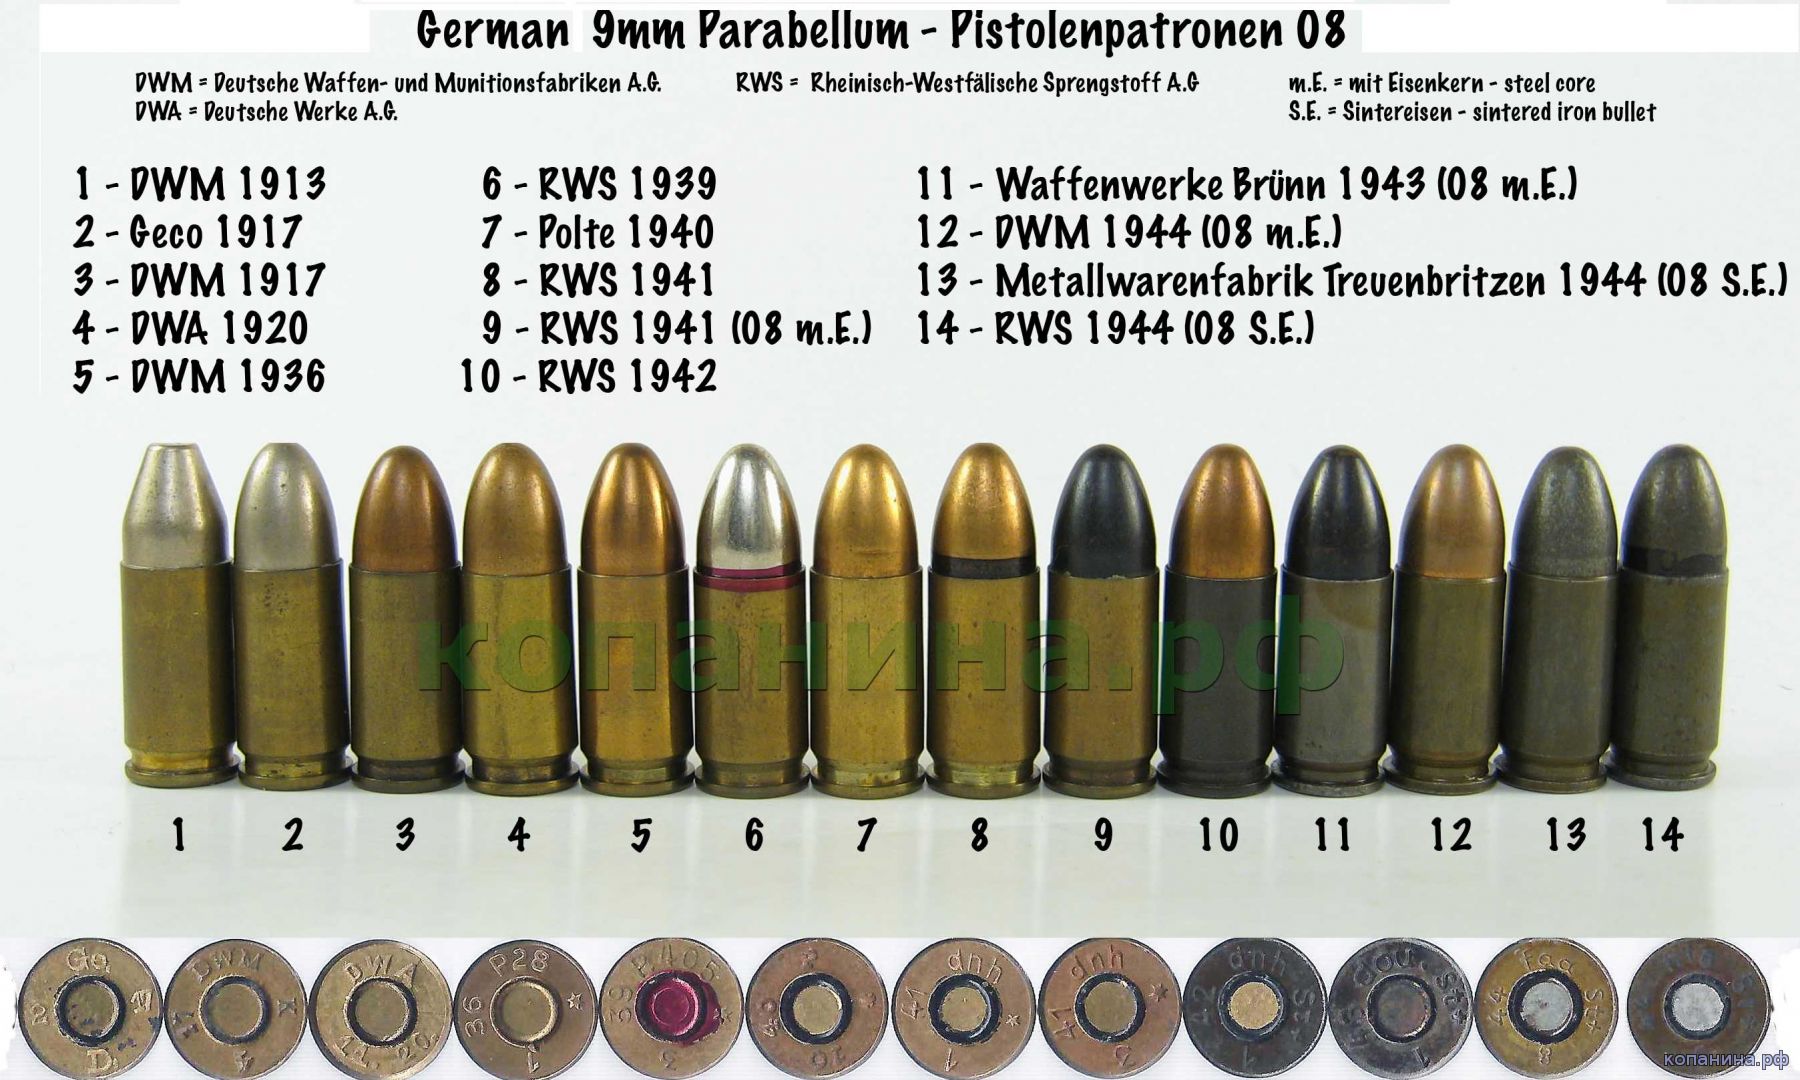 Патрон 9х19 Parabellum создан в Германии на фирме DWM (Deutsche Waffen und ...